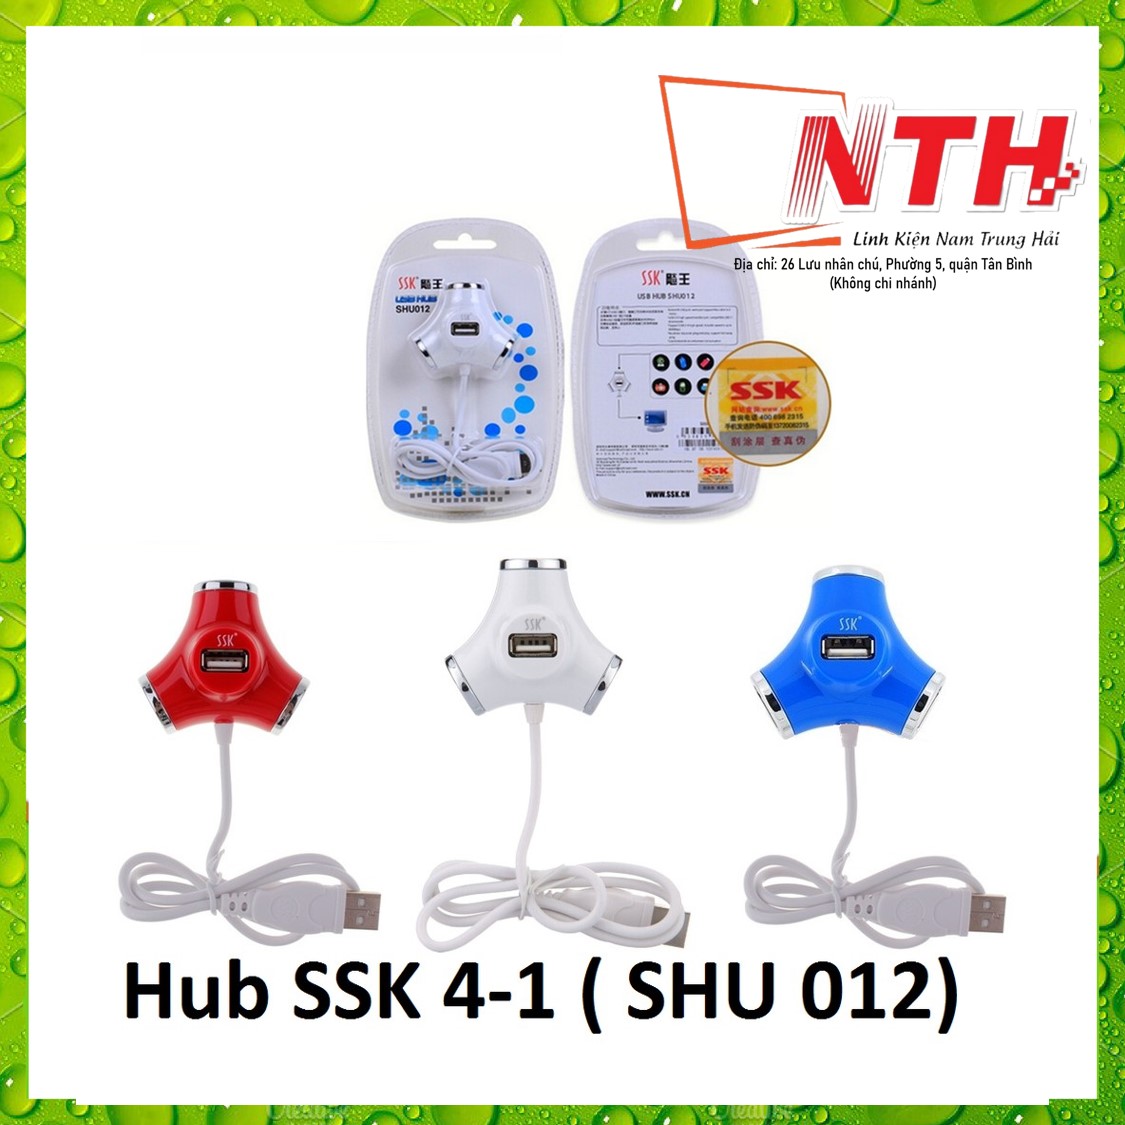 Hub USB bộ chia cổng USB từ 1 ra 4 cổng SSK SHU 012